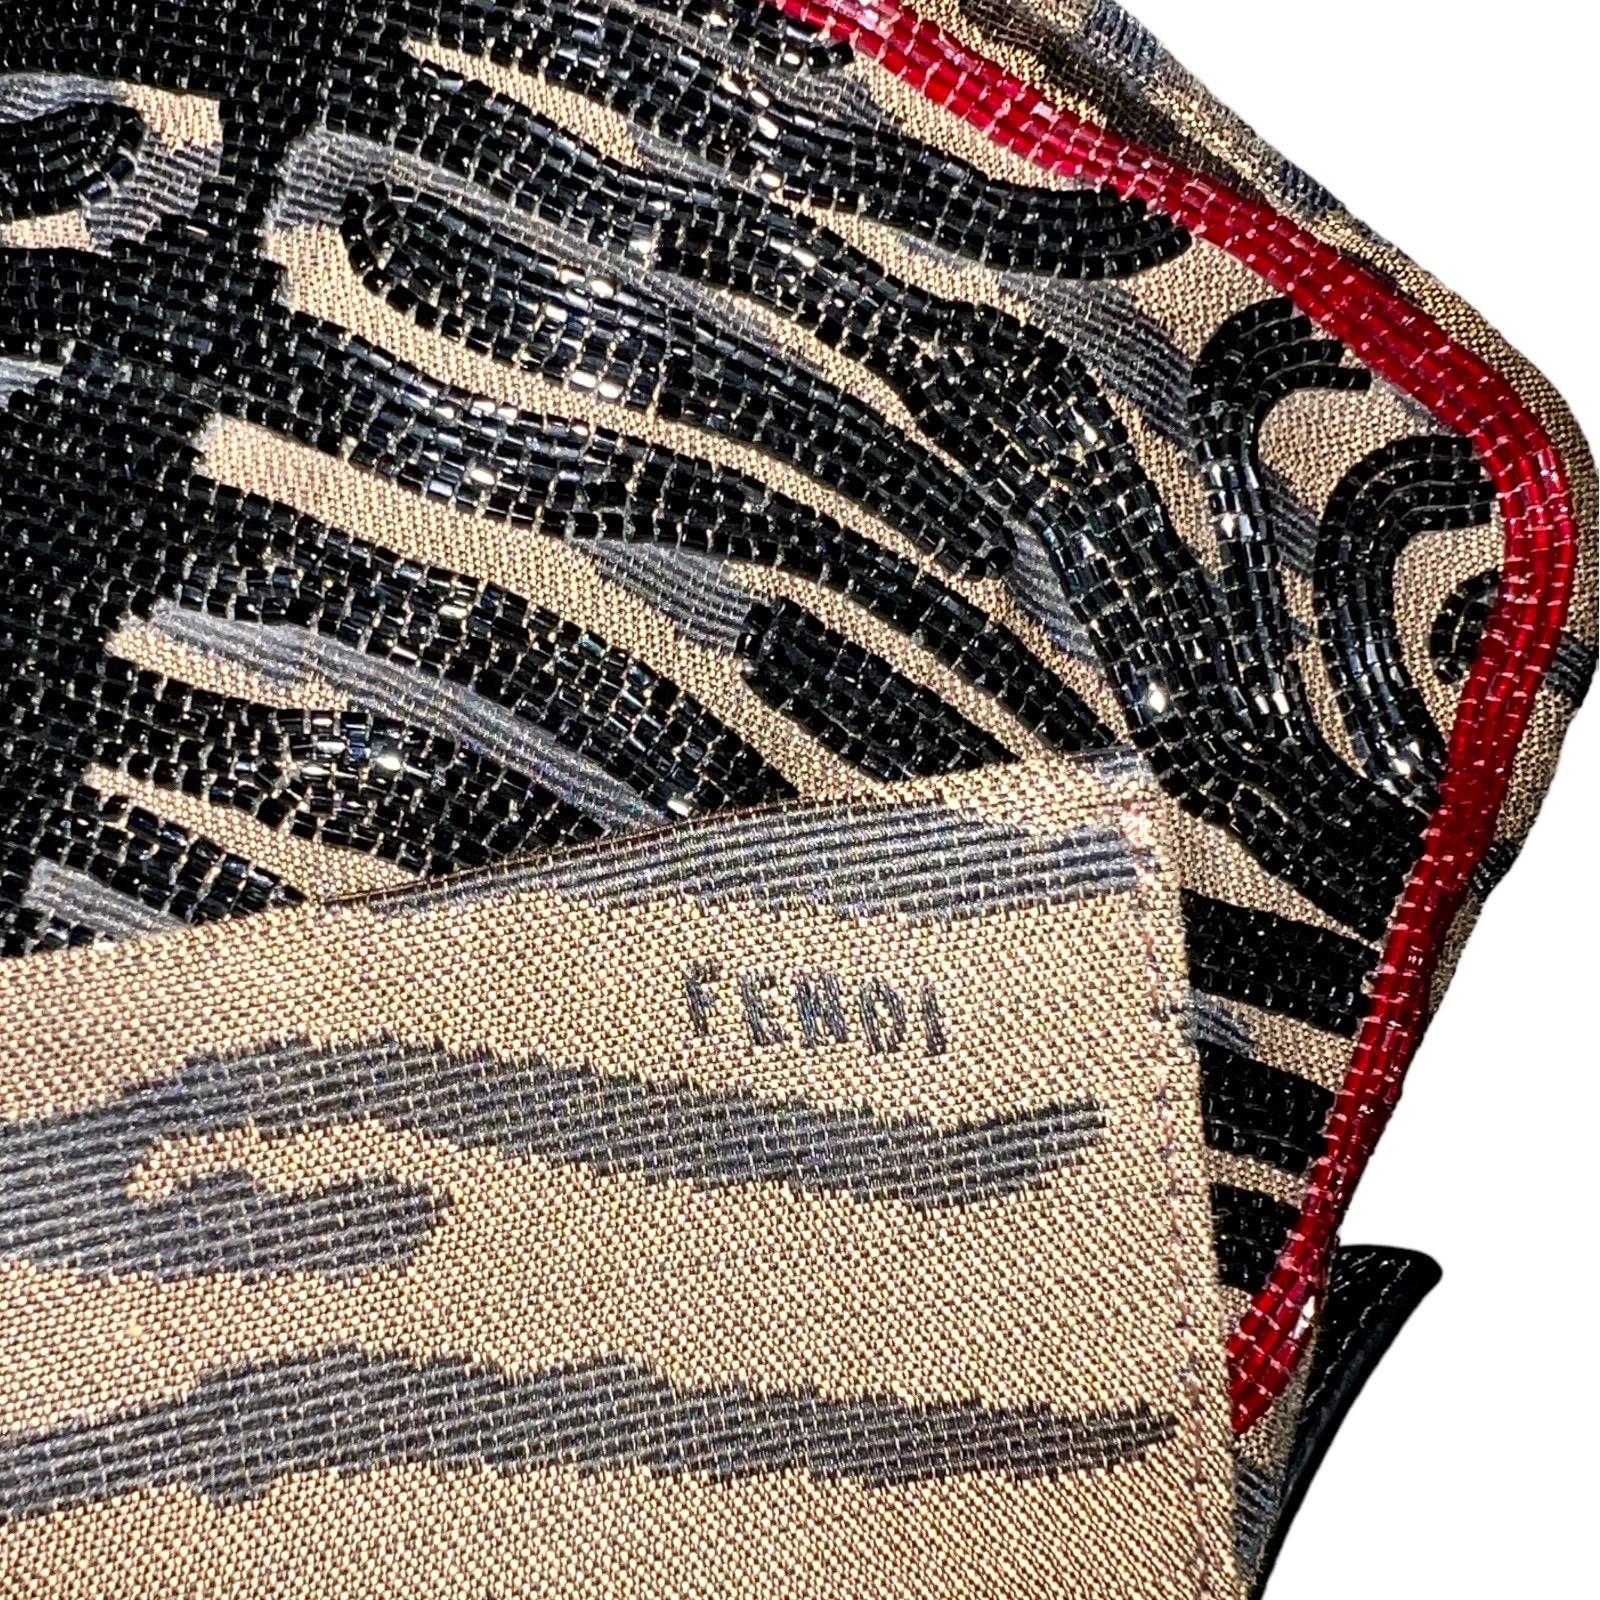 FENDI Embroidered Baguette Handbag Flap Bag Clutch - Full Set For Sale 6